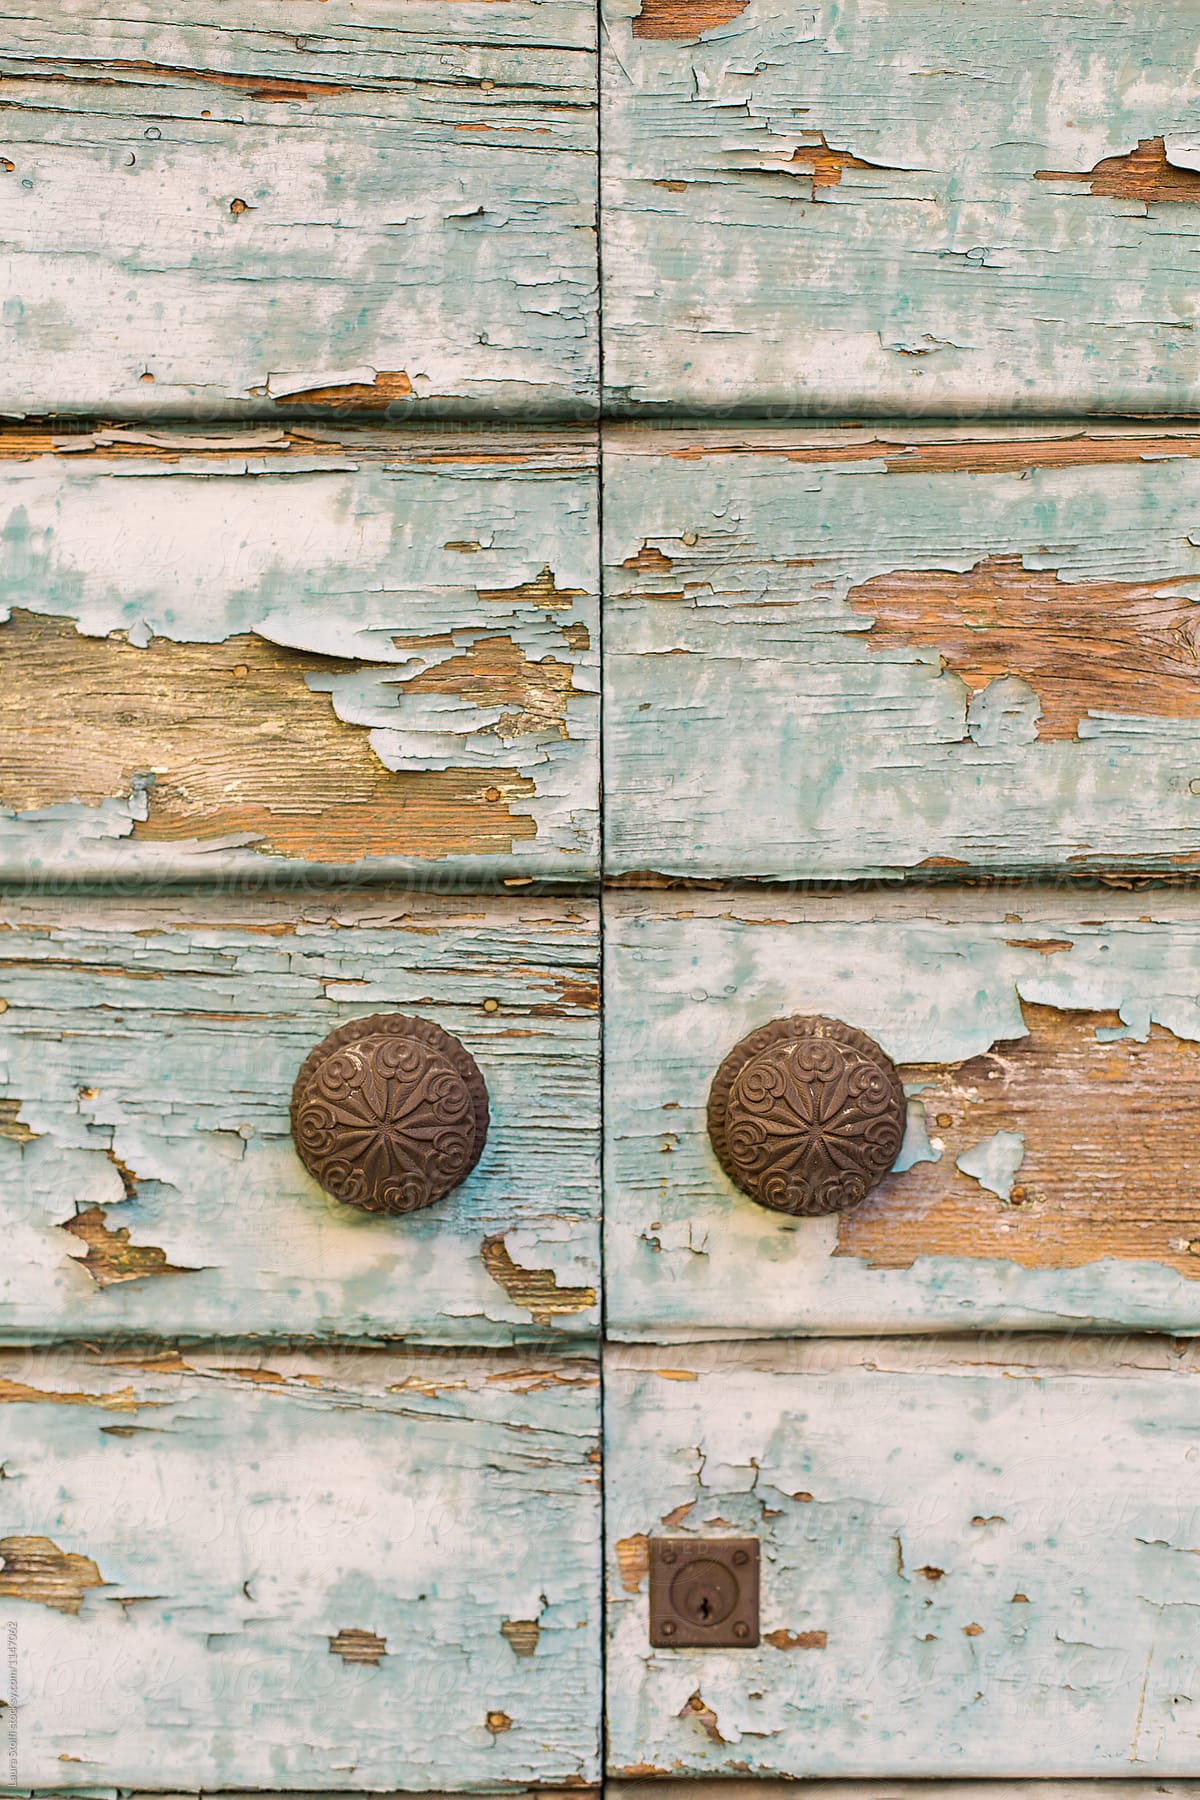 Couple of old brass door knobs on old main door in Italy